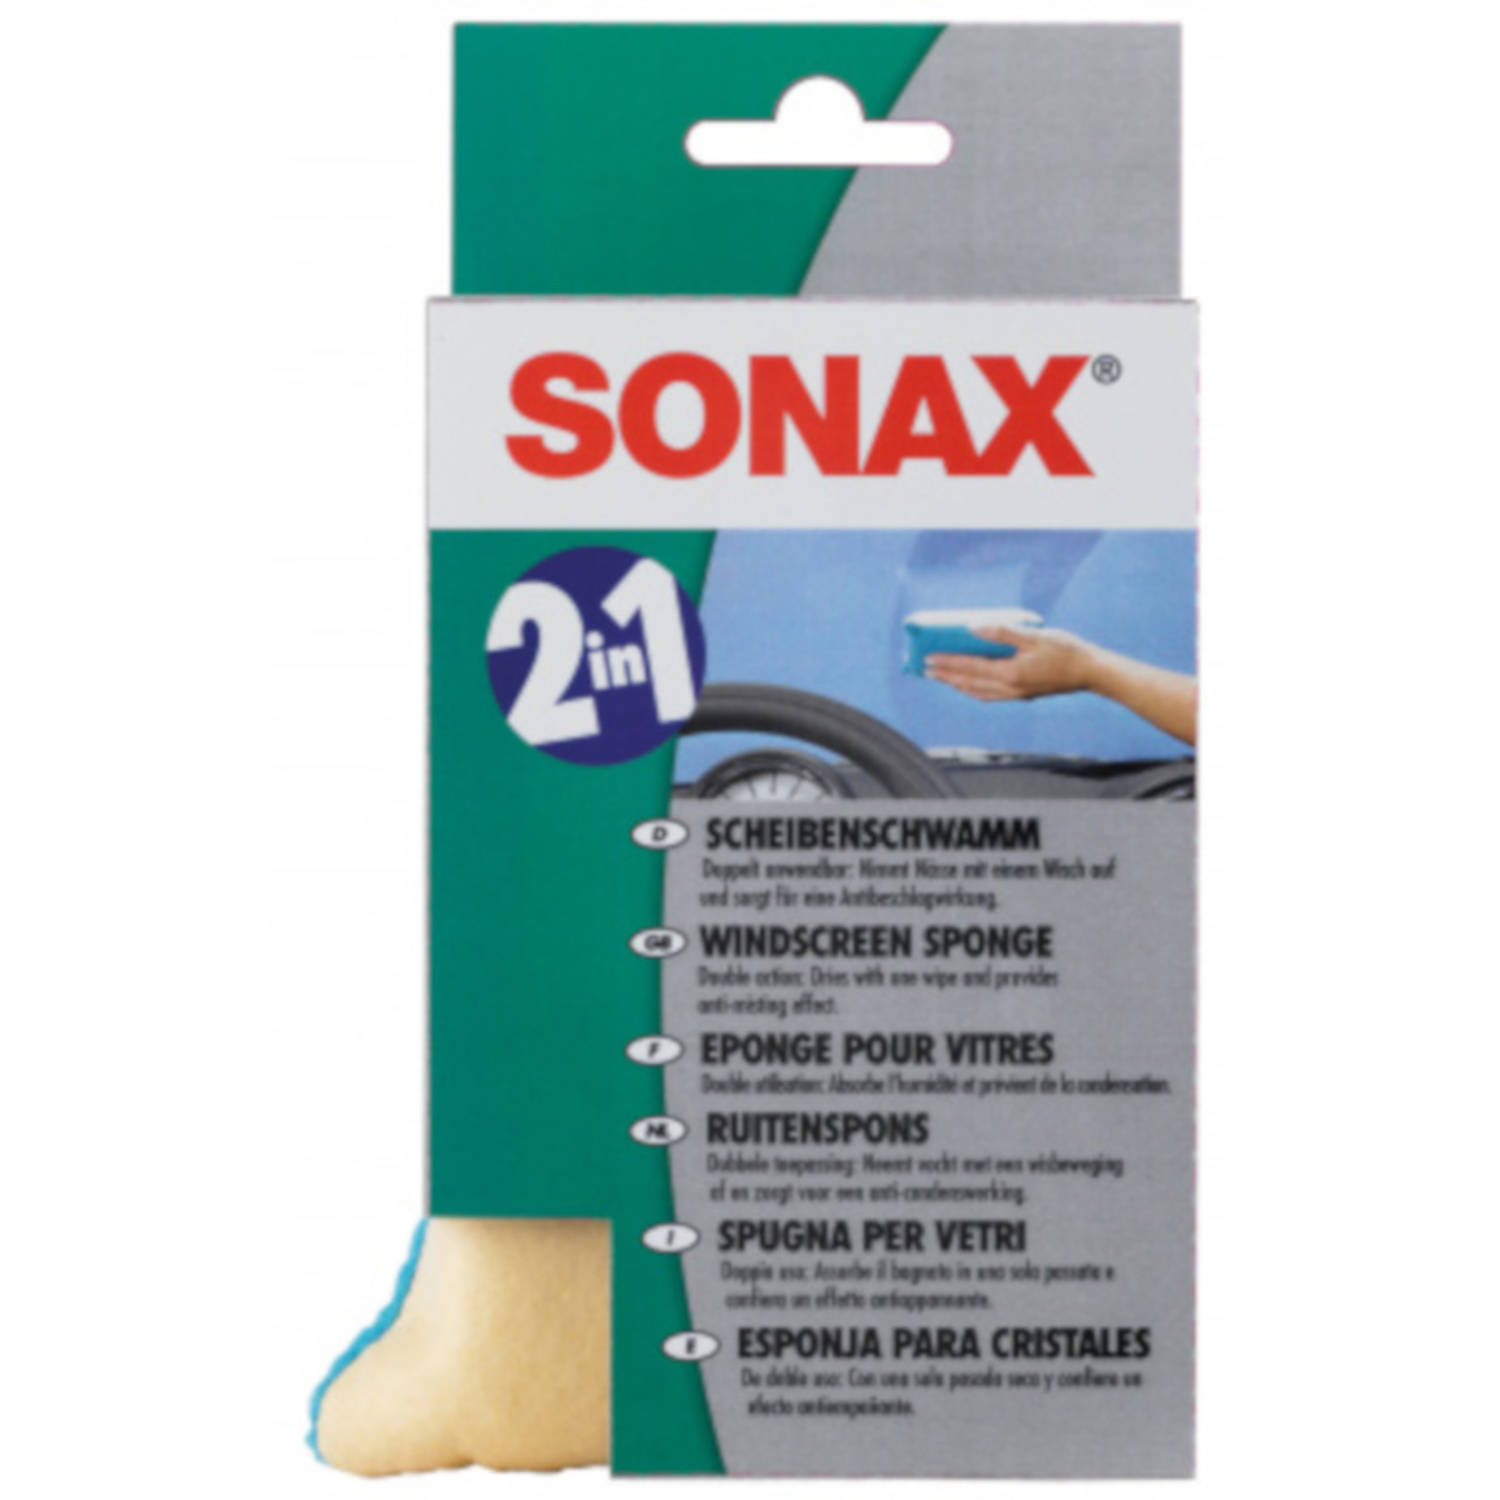 Sonax Ruitenspons 8 X 16 Cm Viscose Geel/groen online kopen